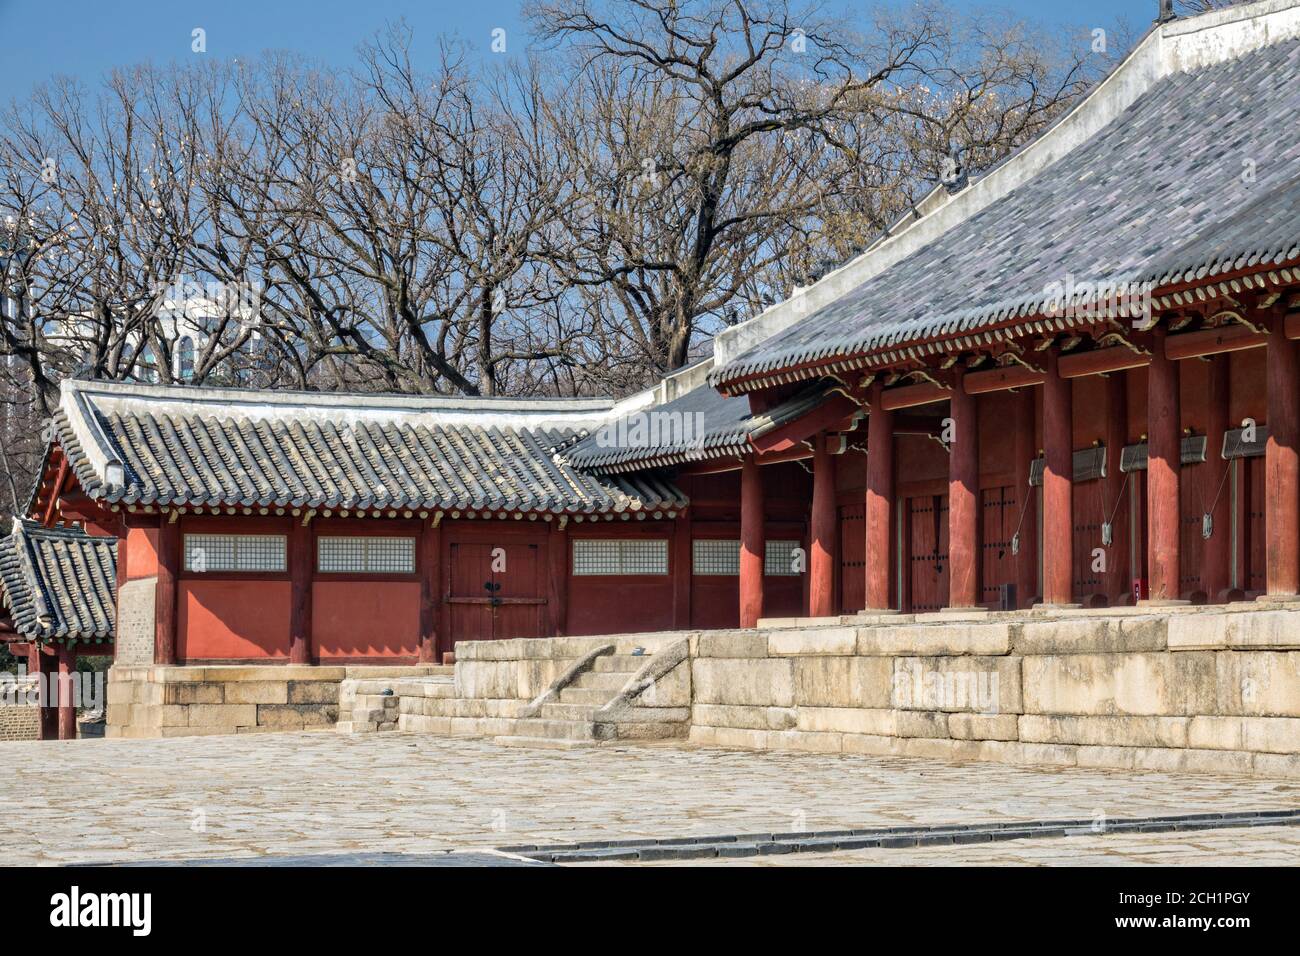 La salle de la paix éternelle au sanctuaire Jongmyo, un sanctuaire confucéen dédié aux chambres d'esprit des rois et reines décédés de la dynastie coréenne Joseon à Séoul, en Corée. Banque D'Images